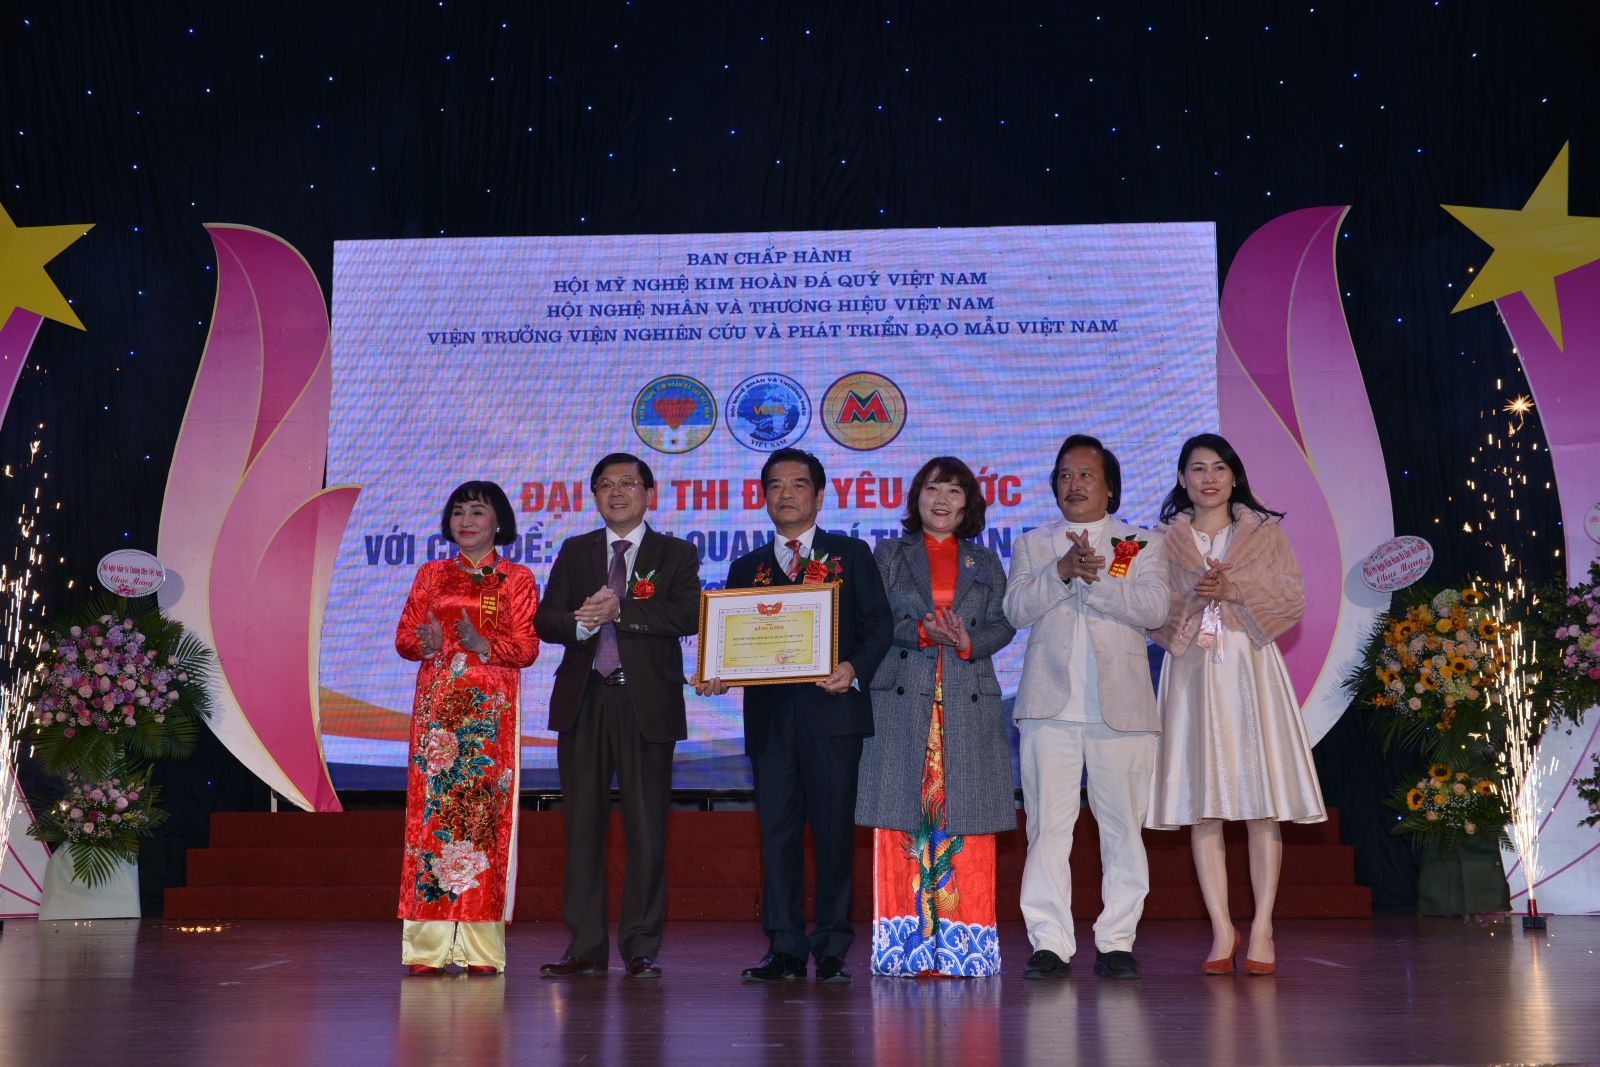 Đại hội thi đua yêu nước với chủ đề Vinh quang trí tuệ bàn tay vàng Tự hào thương hiệu Việt Nam thành công tốt đẹp